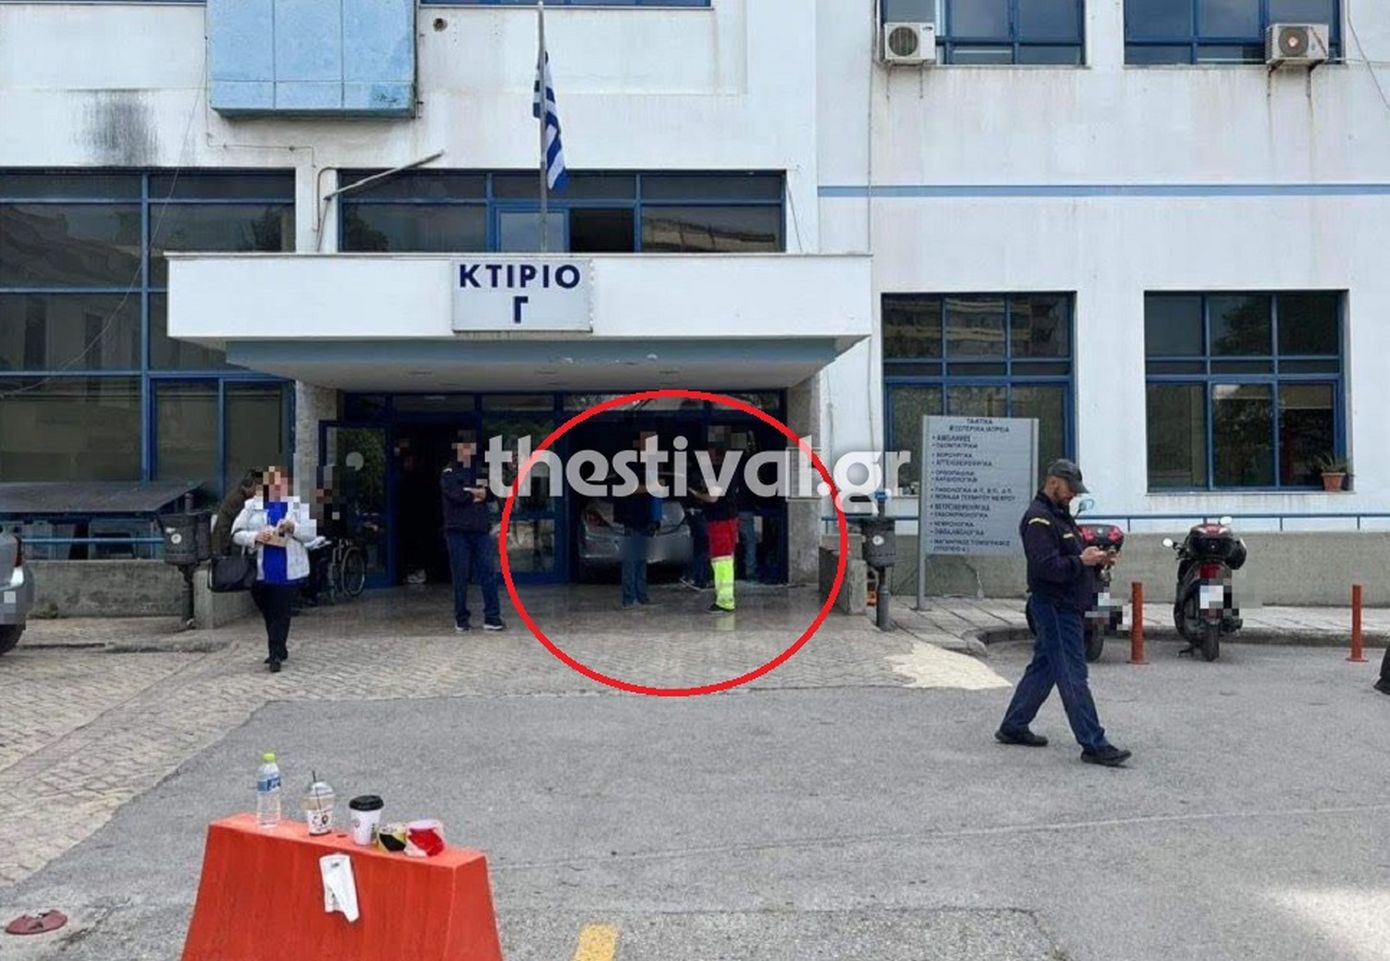 Απίστευτο περιστατικό στη Θεσσαλονίκη: Αυτοκίνητο κατέληξε μέσα στο Ιπποκράτειο Νοσοκομείο